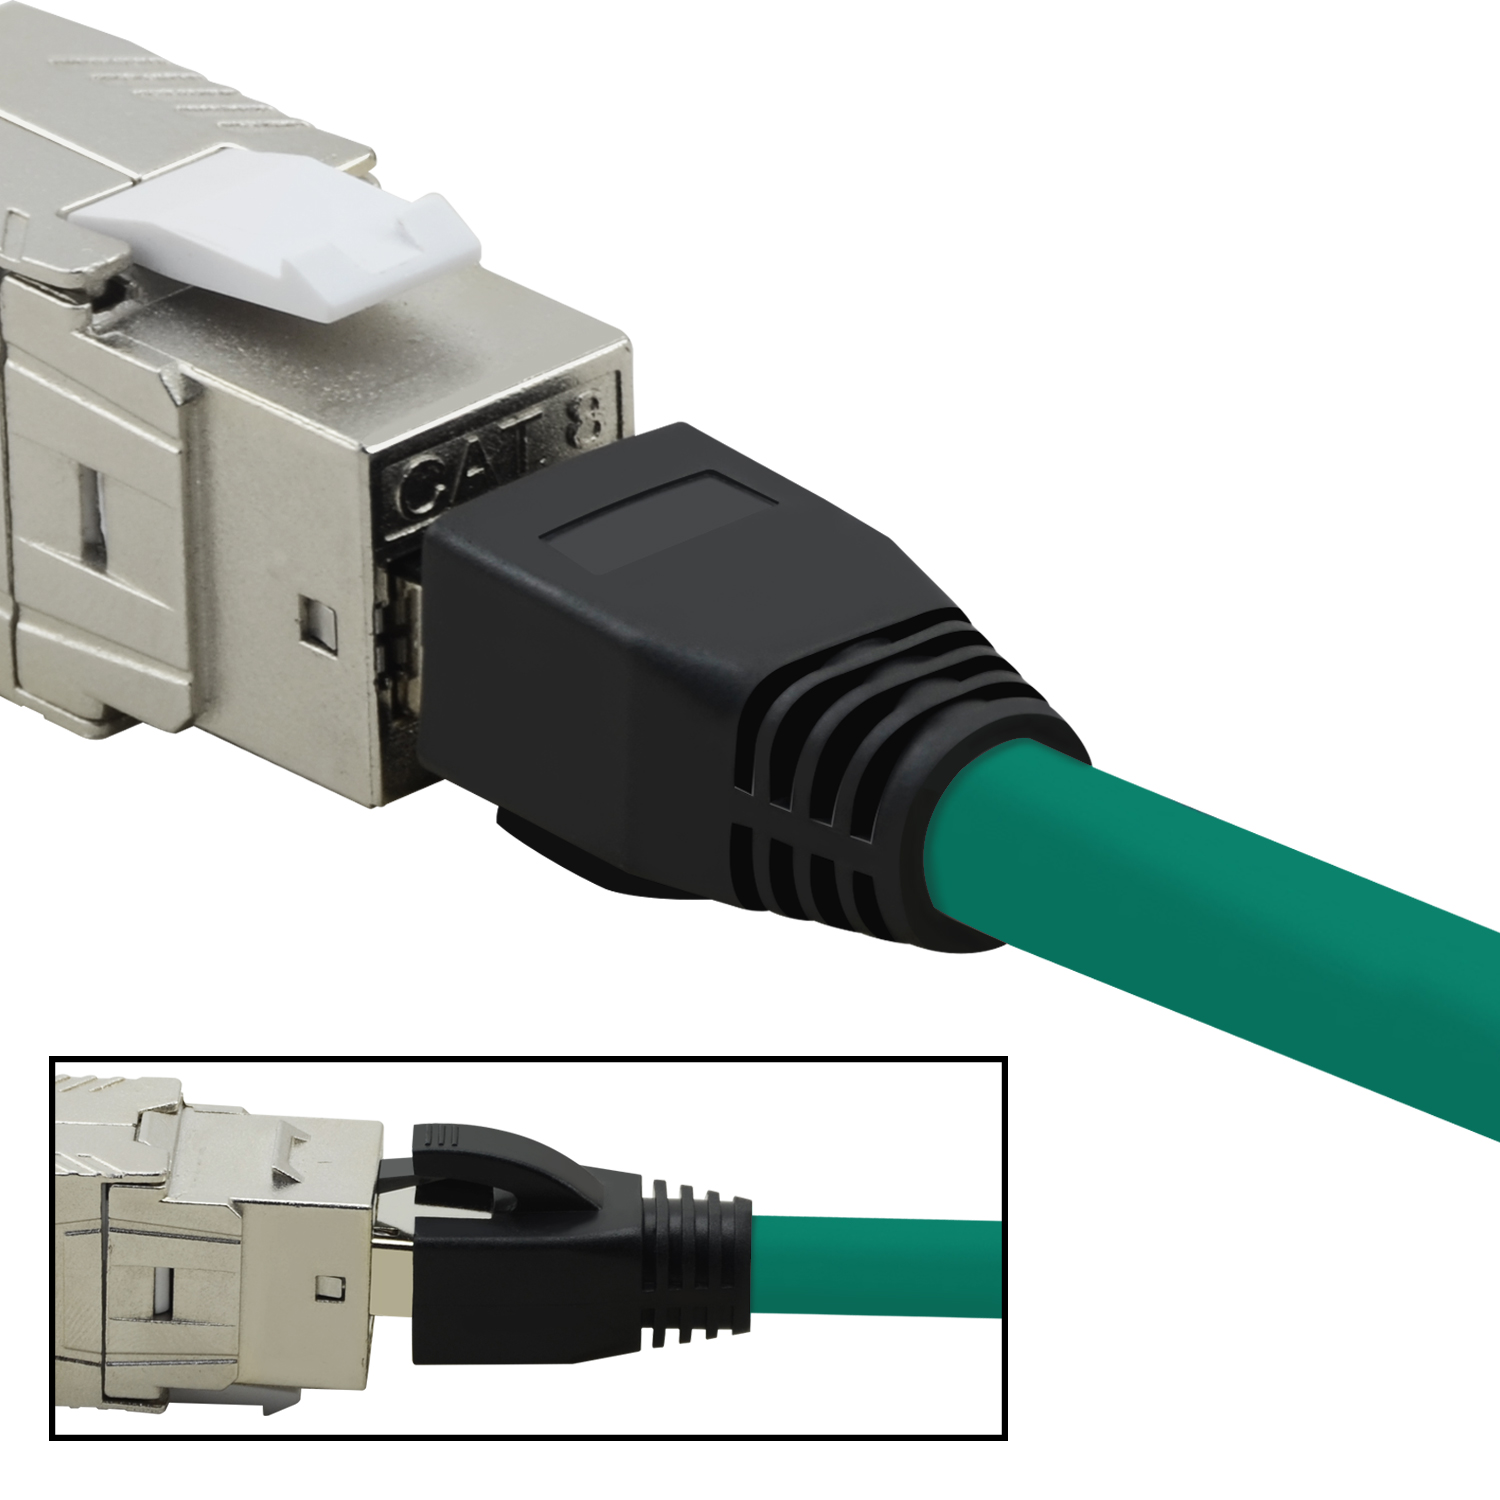 TPFNET 5m Patchkabel / 40 GBit, m Netzwerkkabel 5 grün, S/FTP Netzwerkkabel